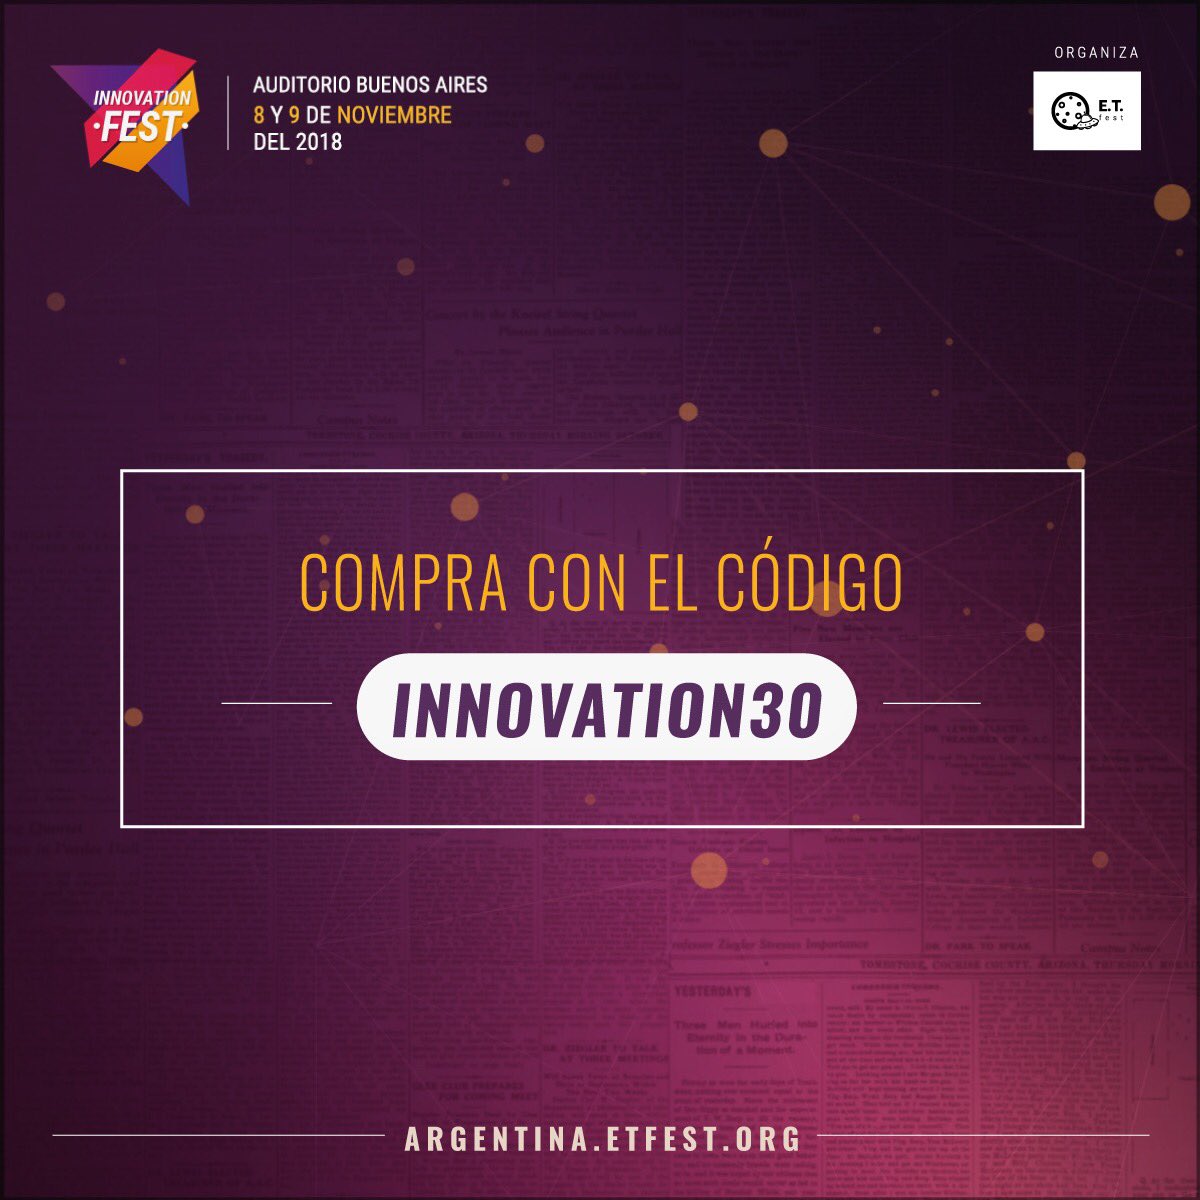 Recuerda que por tiempo limitado puedes conseguir tu entrada con un 30% de descuento utilizando el código Innovation30 en argentina.etfest.org